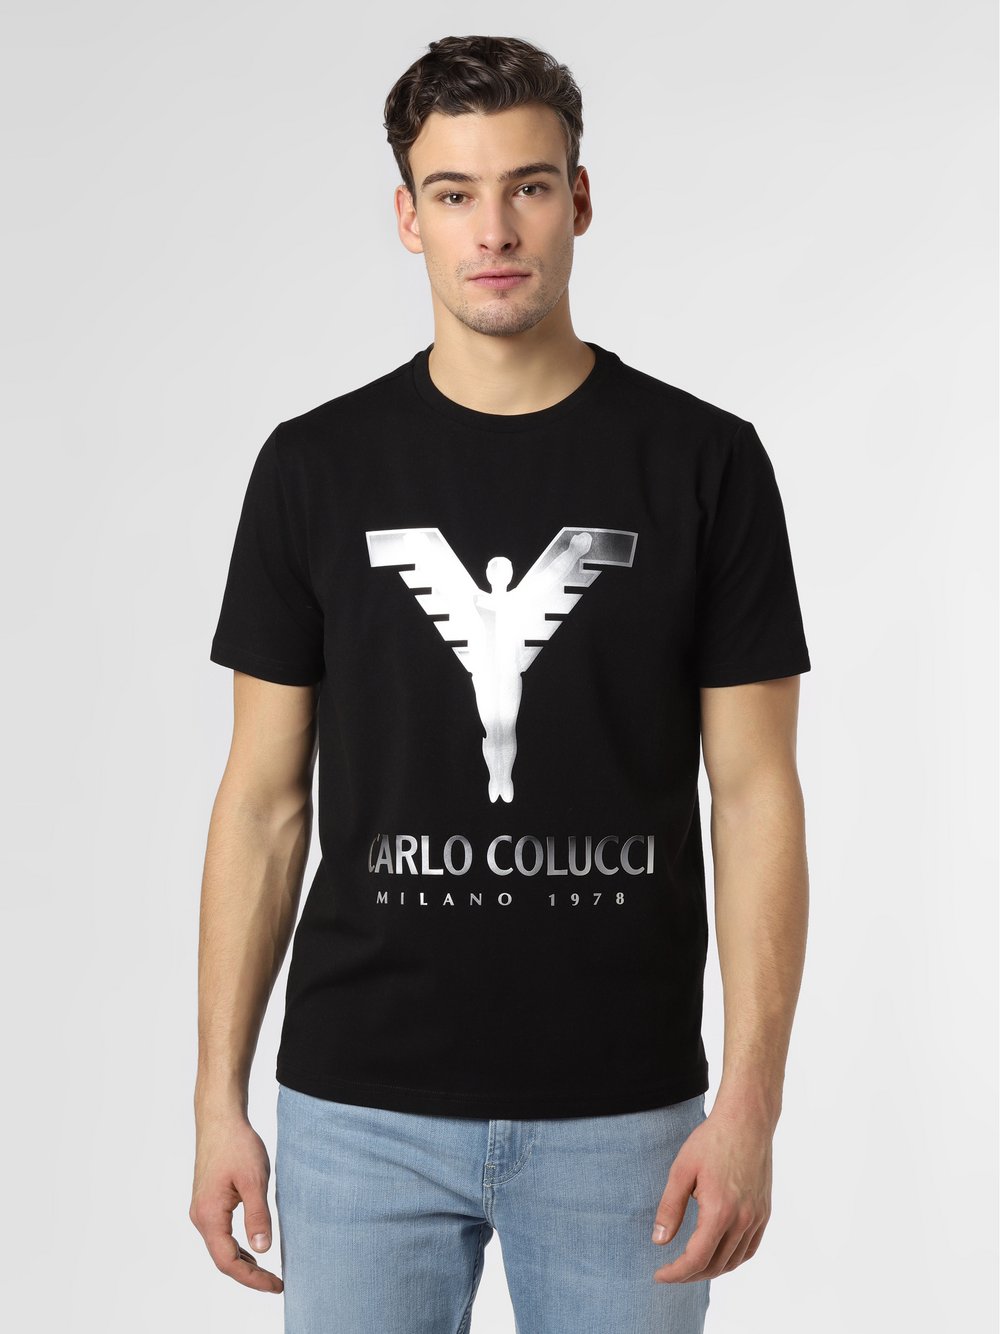 Carlo Colucci - T-shirt męski, czarny